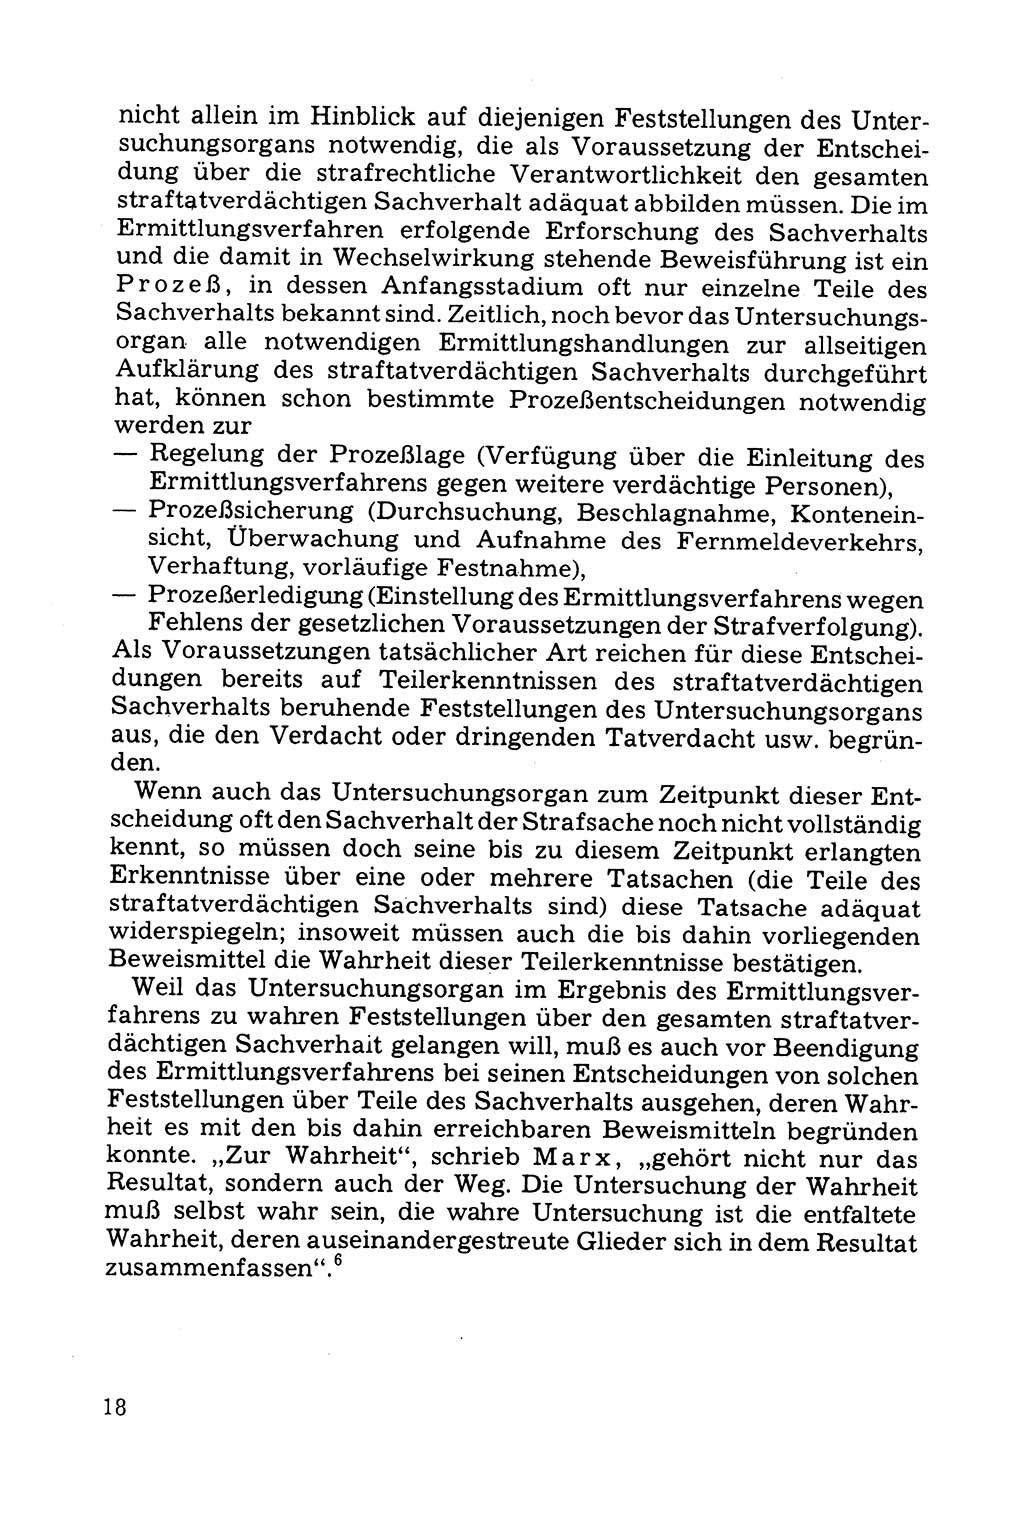 Grundfragen der Beweisführung im Ermittlungsverfahren [Deutsche Demokratische Republik (DDR)] 1980, Seite 18 (Bws.-Fhrg. EV DDR 1980, S. 18)